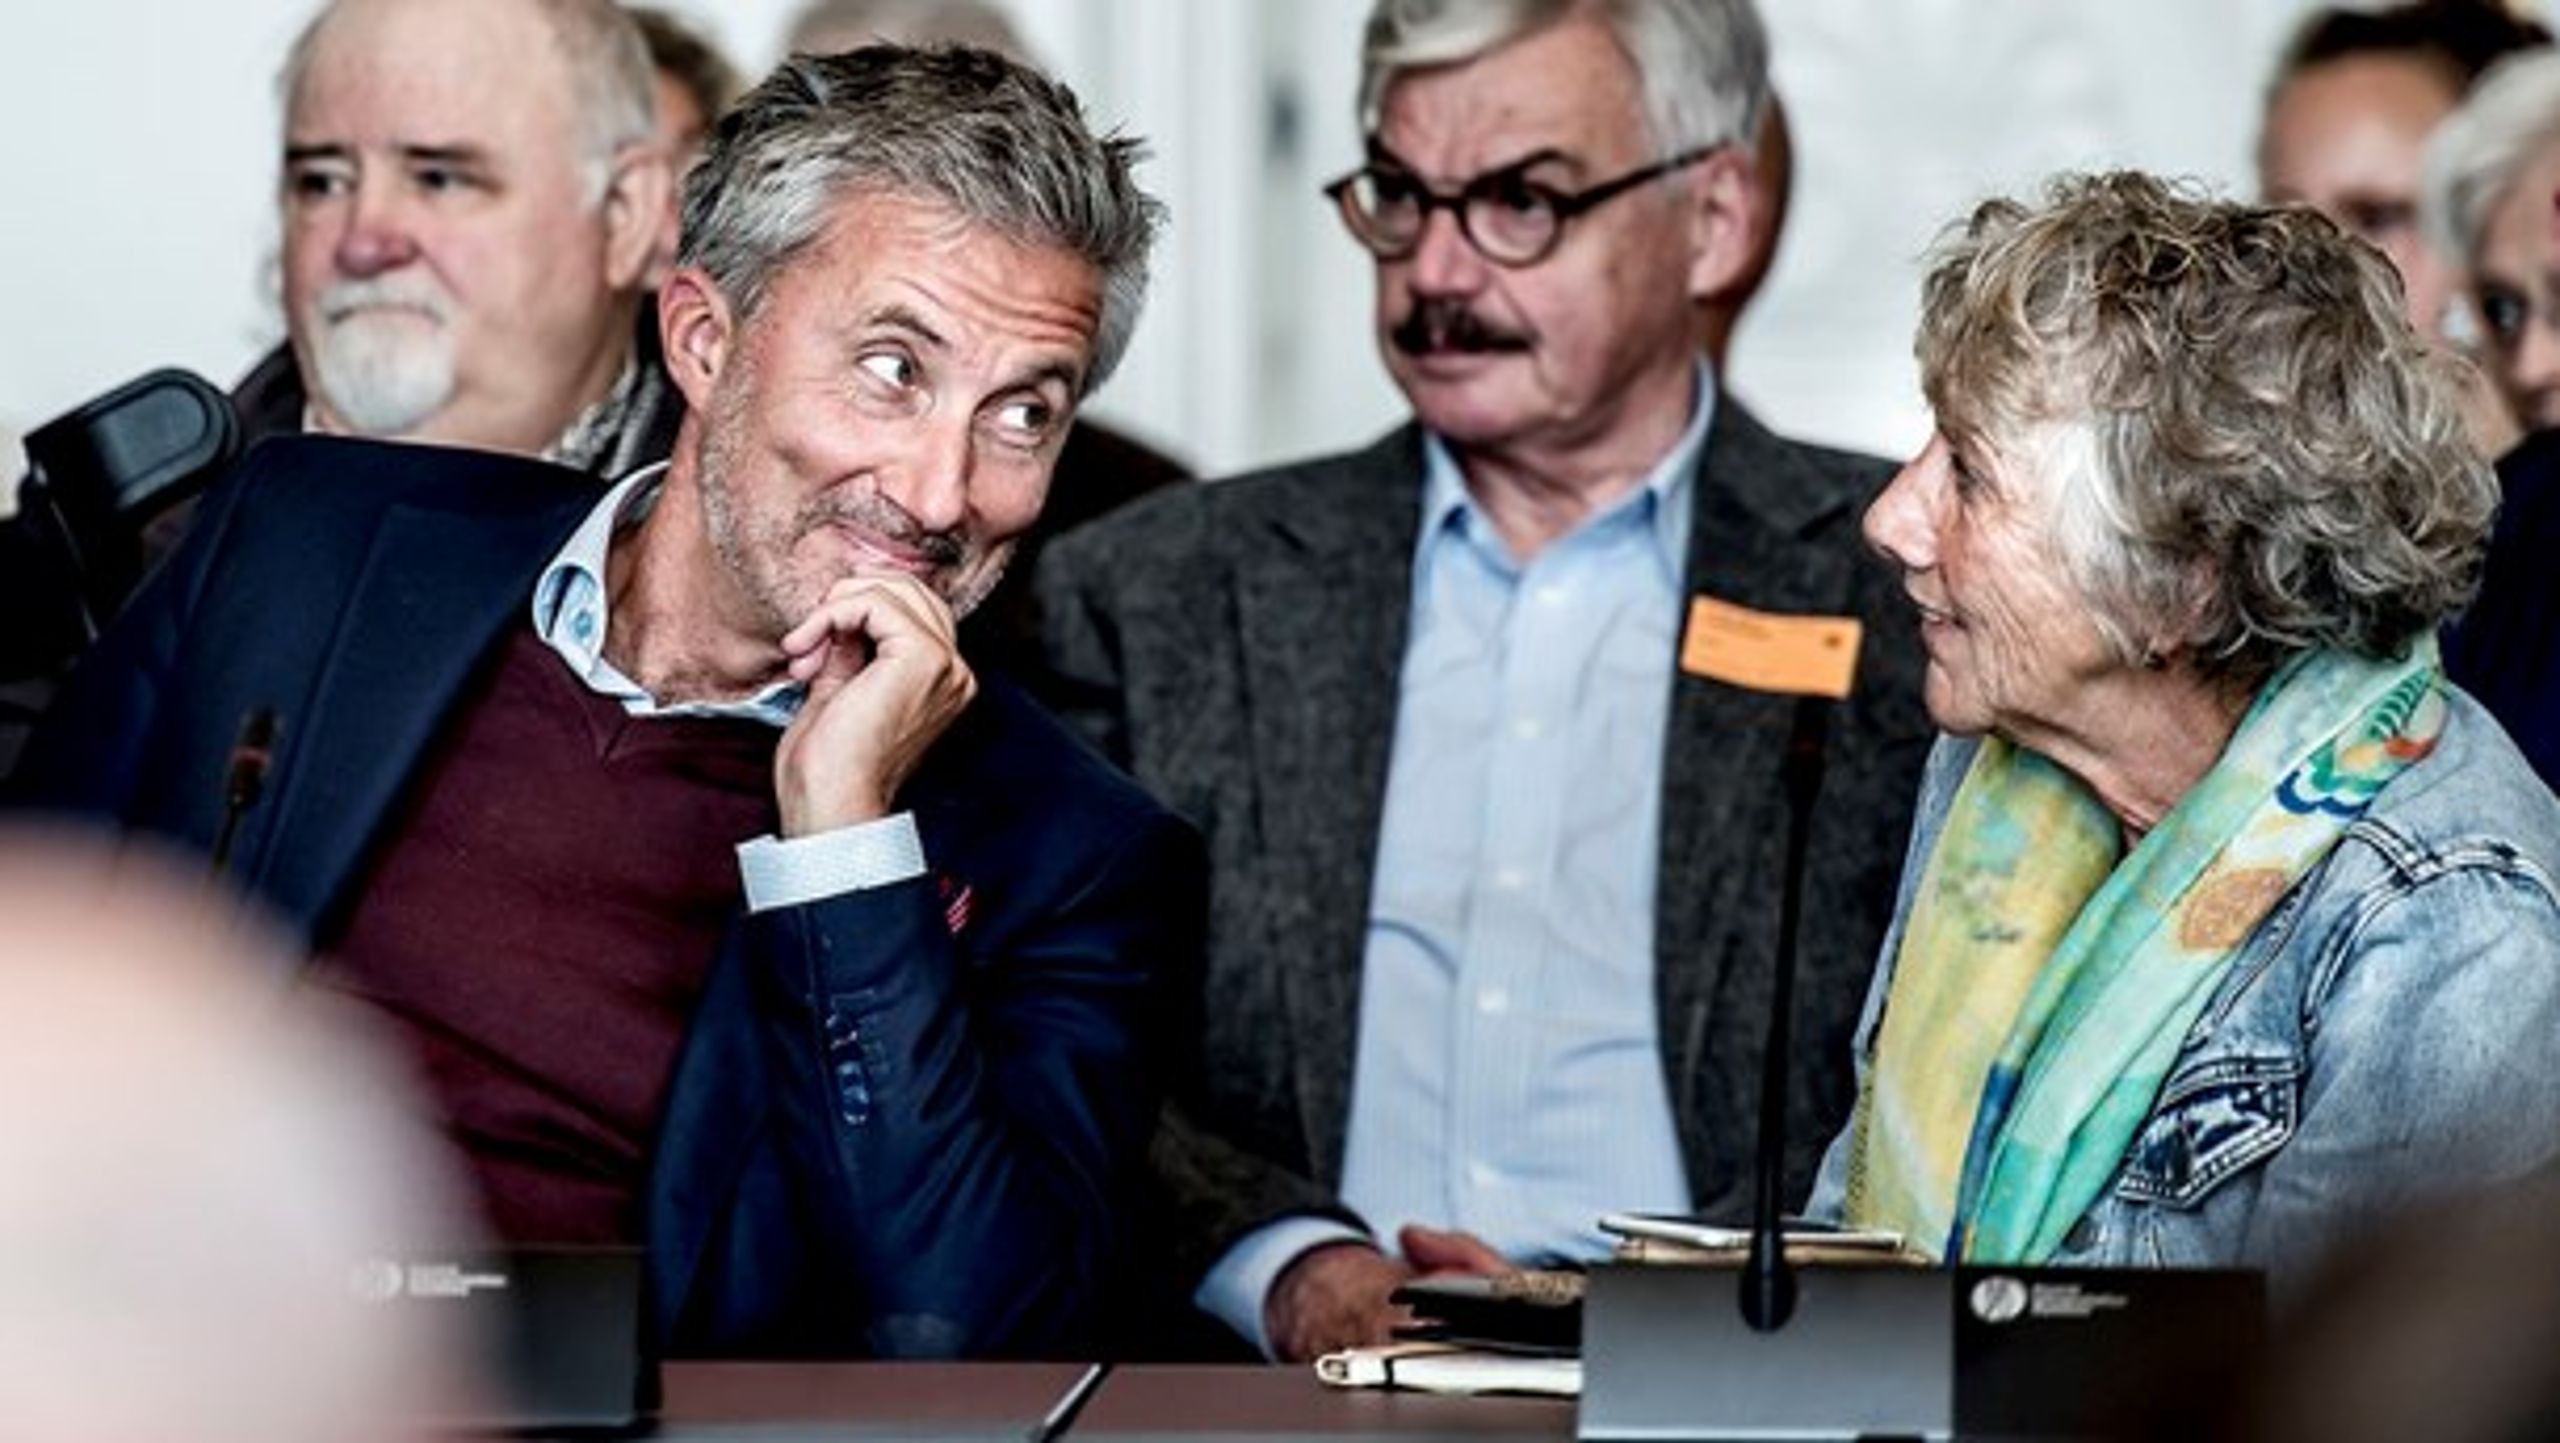 Morten Løkkegaard vil gerne være Venstres spidskandidat til næste Europa-Parlamentsvalg i 2019. Margrete Auken kan ikke fortælle noget konkret om sine planer for SF's spidskandidatur.